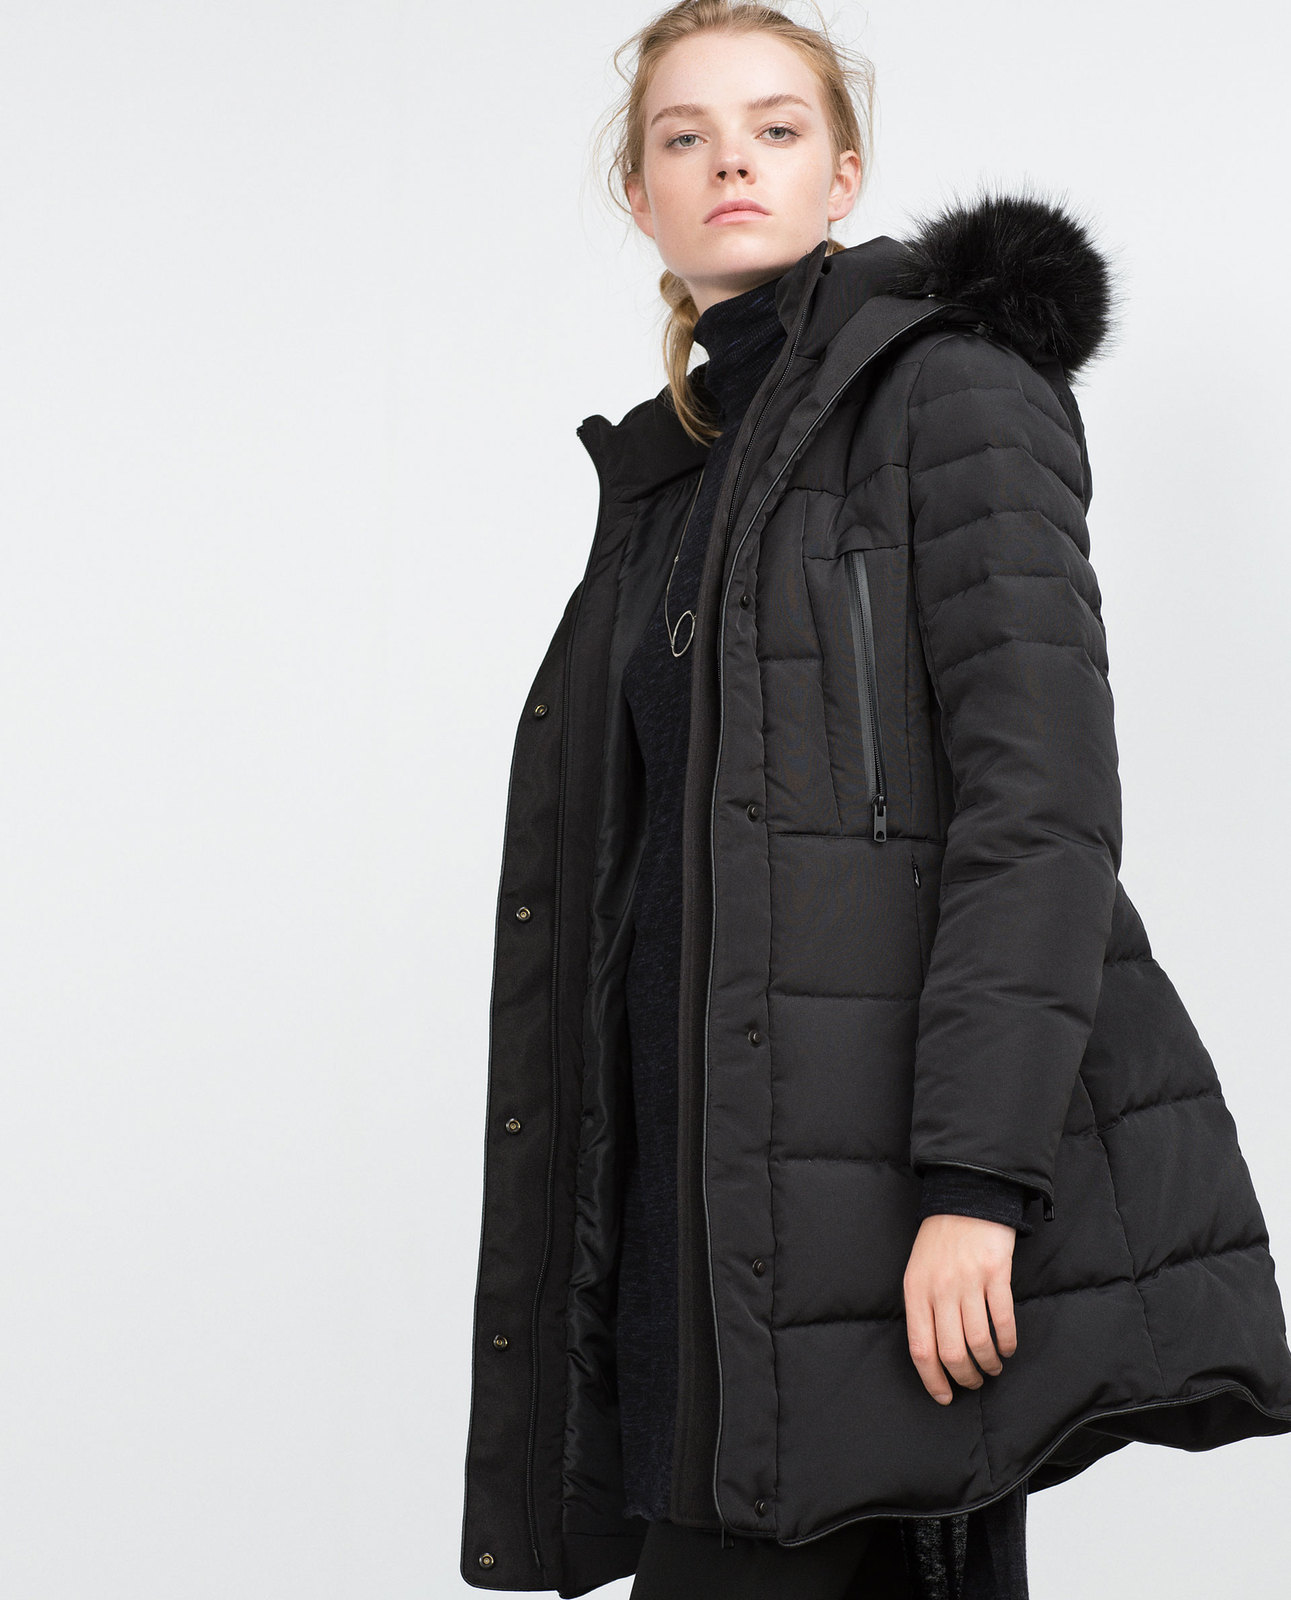 Zara fekete levehető szőrmés-kapucnis anorák 2015.10.15 #88682 fotója